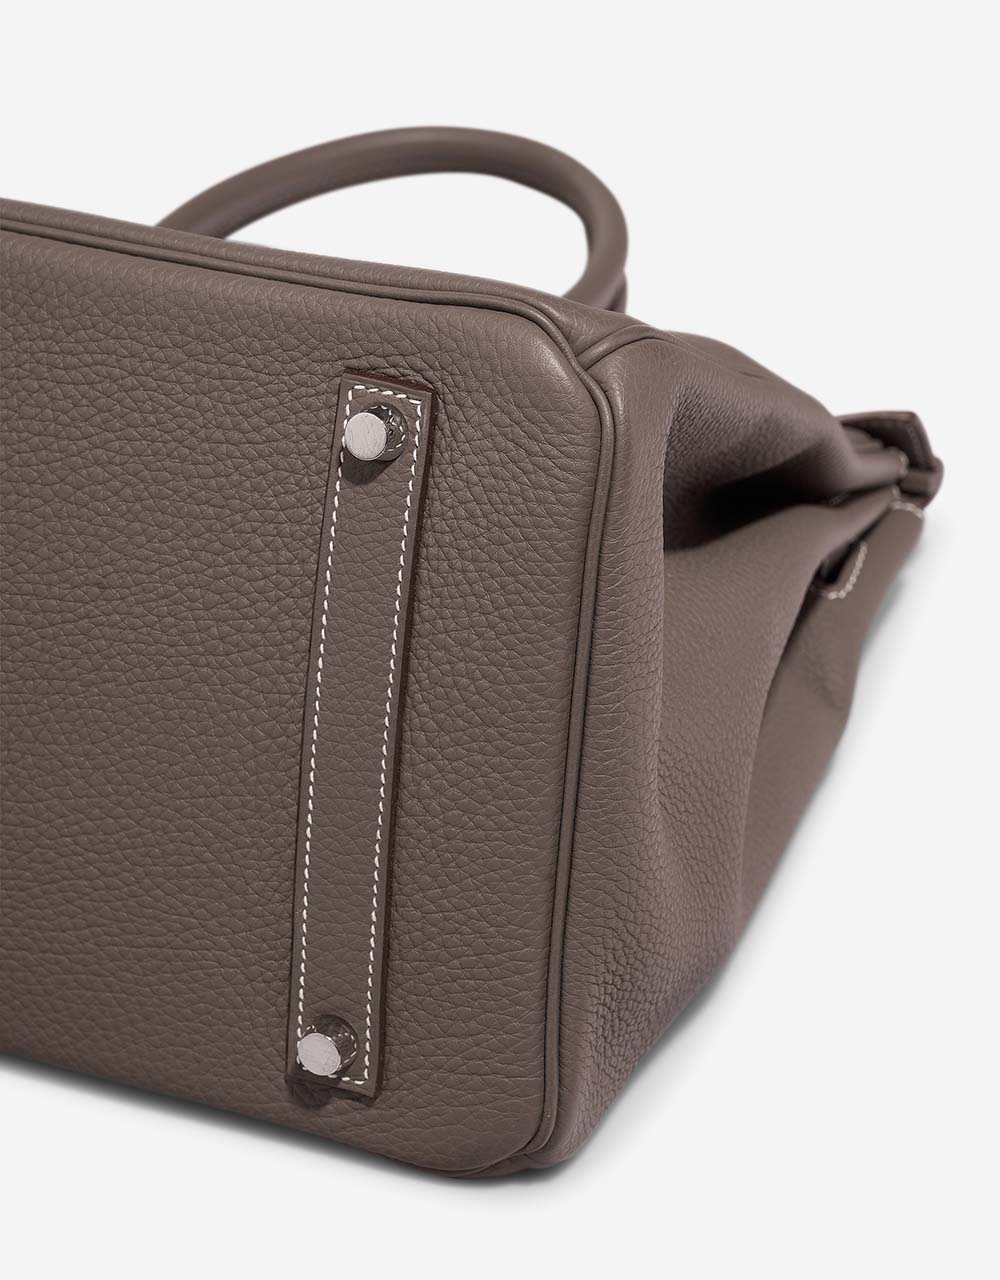 Hermès Birkin 35 Etoupe Gebrauchsspuren| Verkaufen Sie Ihre Designertasche auf Saclab.com